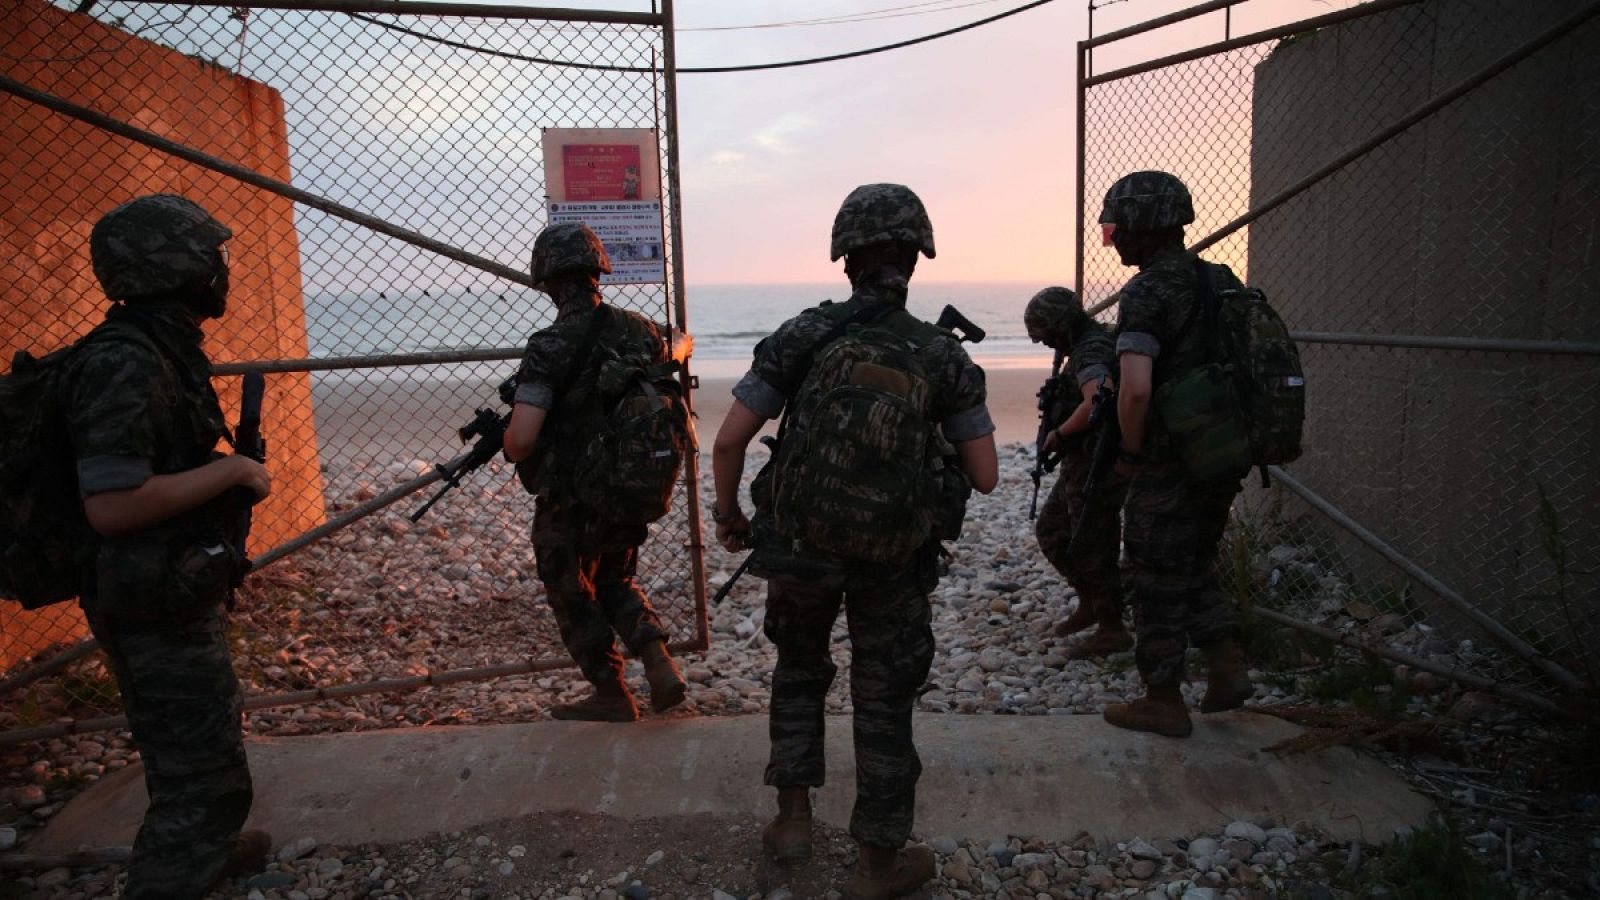 Marines surcoreanos bloquean la entrada a una playa en la isla de Yeonpyeong, controlada por Corea del Sur, cerca de la "línea límite del norte", tras el ataque a la oficina de enlace intercoreana